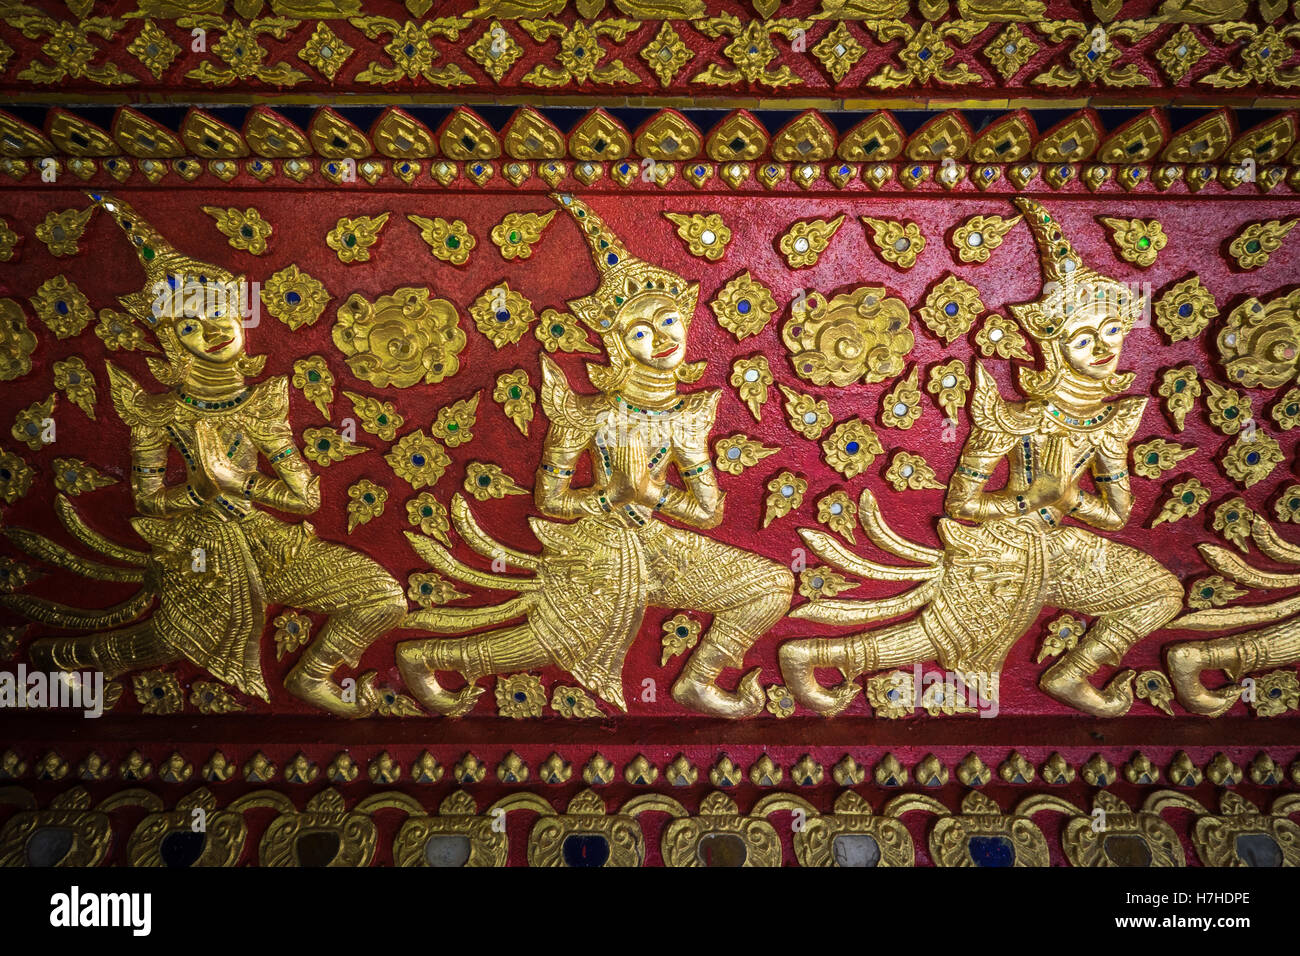 Detalladas ilustraciones pintadas en el templo budista, Wat Suan Dok en Chiang Mai, al norte de Tailandia. Foto de stock